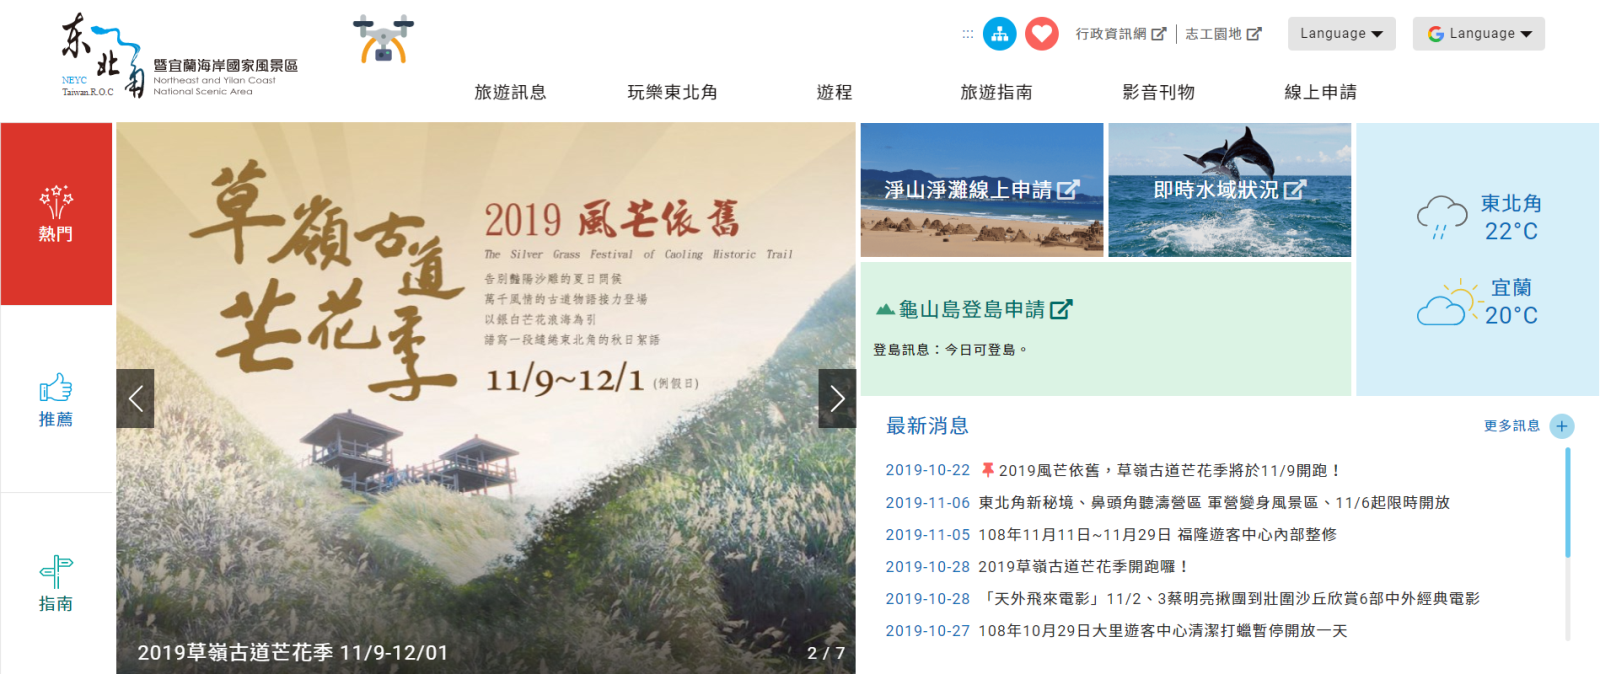 新版網站提供國內外遊客一站式的新型態智慧旅遊服務